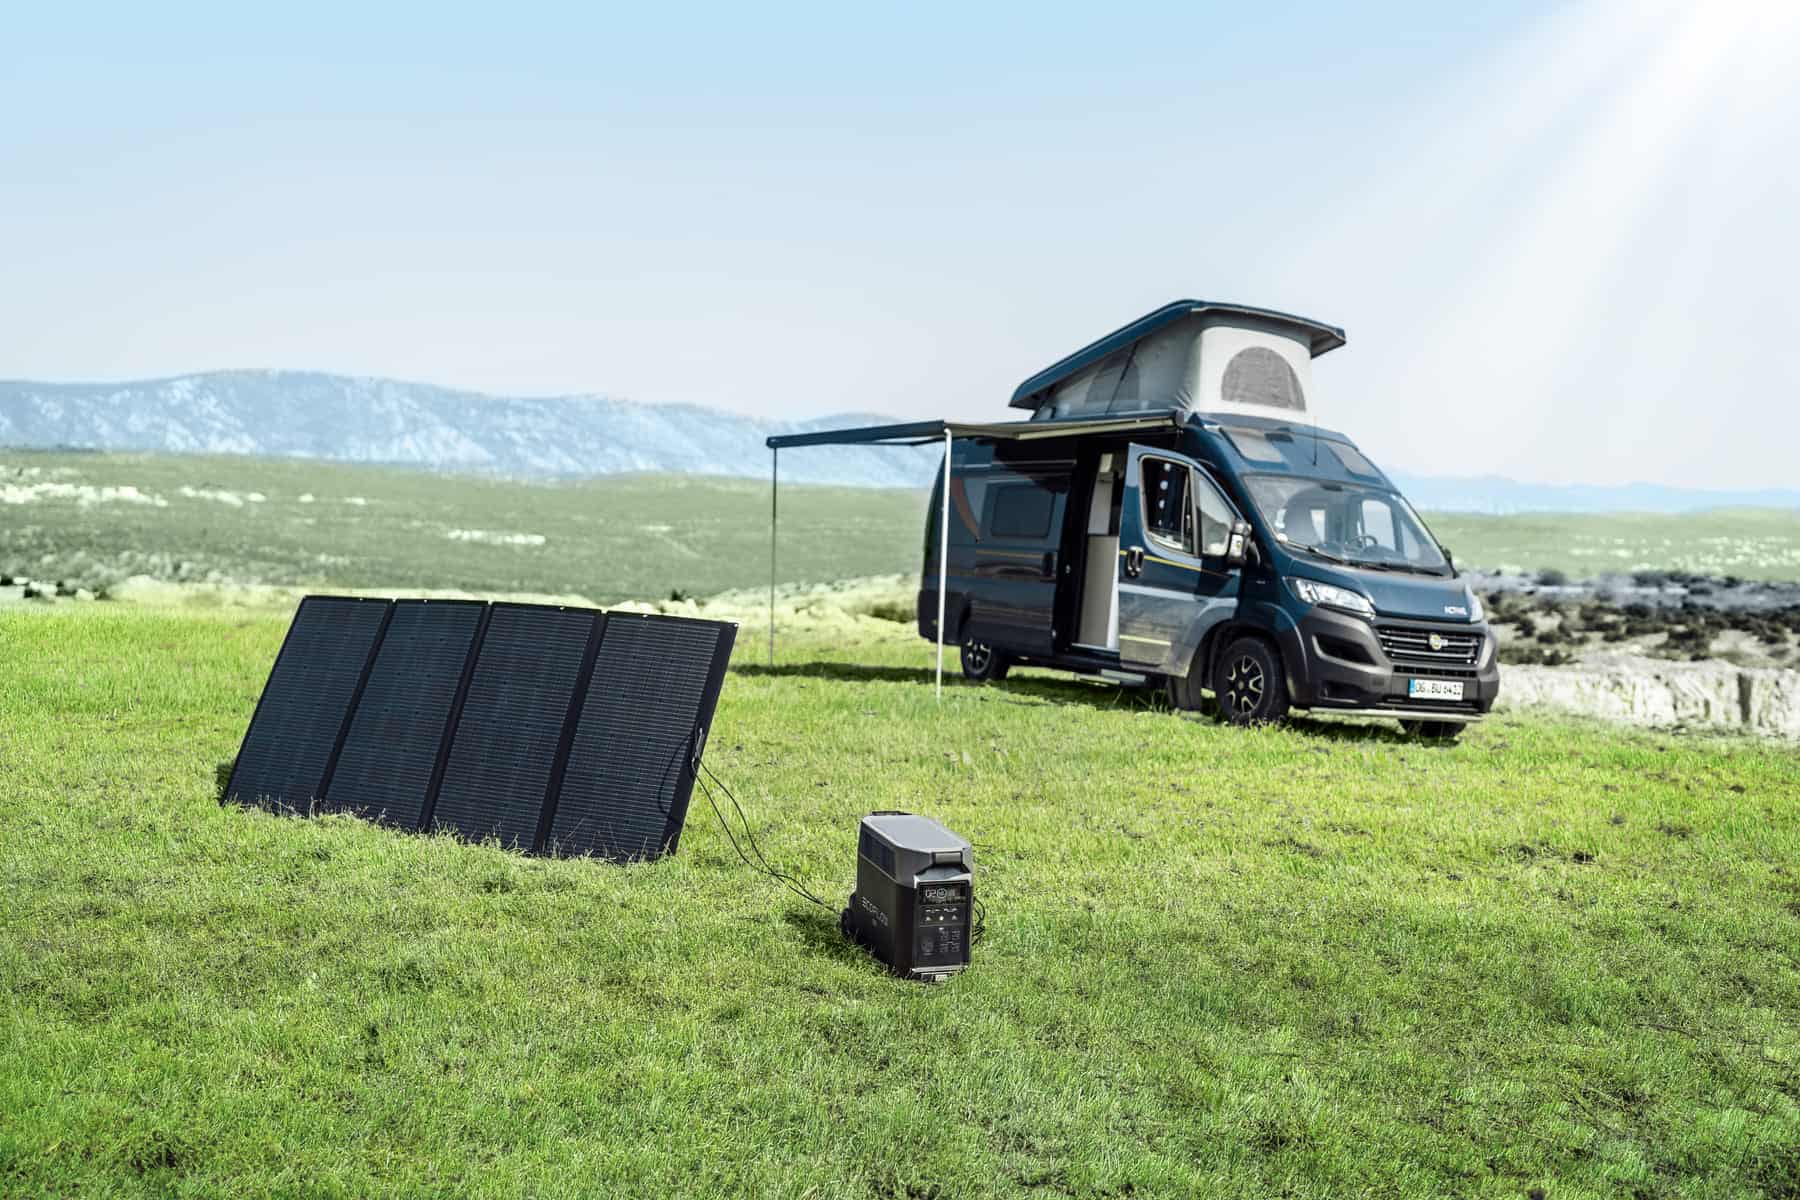 Solaranlagen auf dem Camper richtig auslegen und montieren - GreenAkku